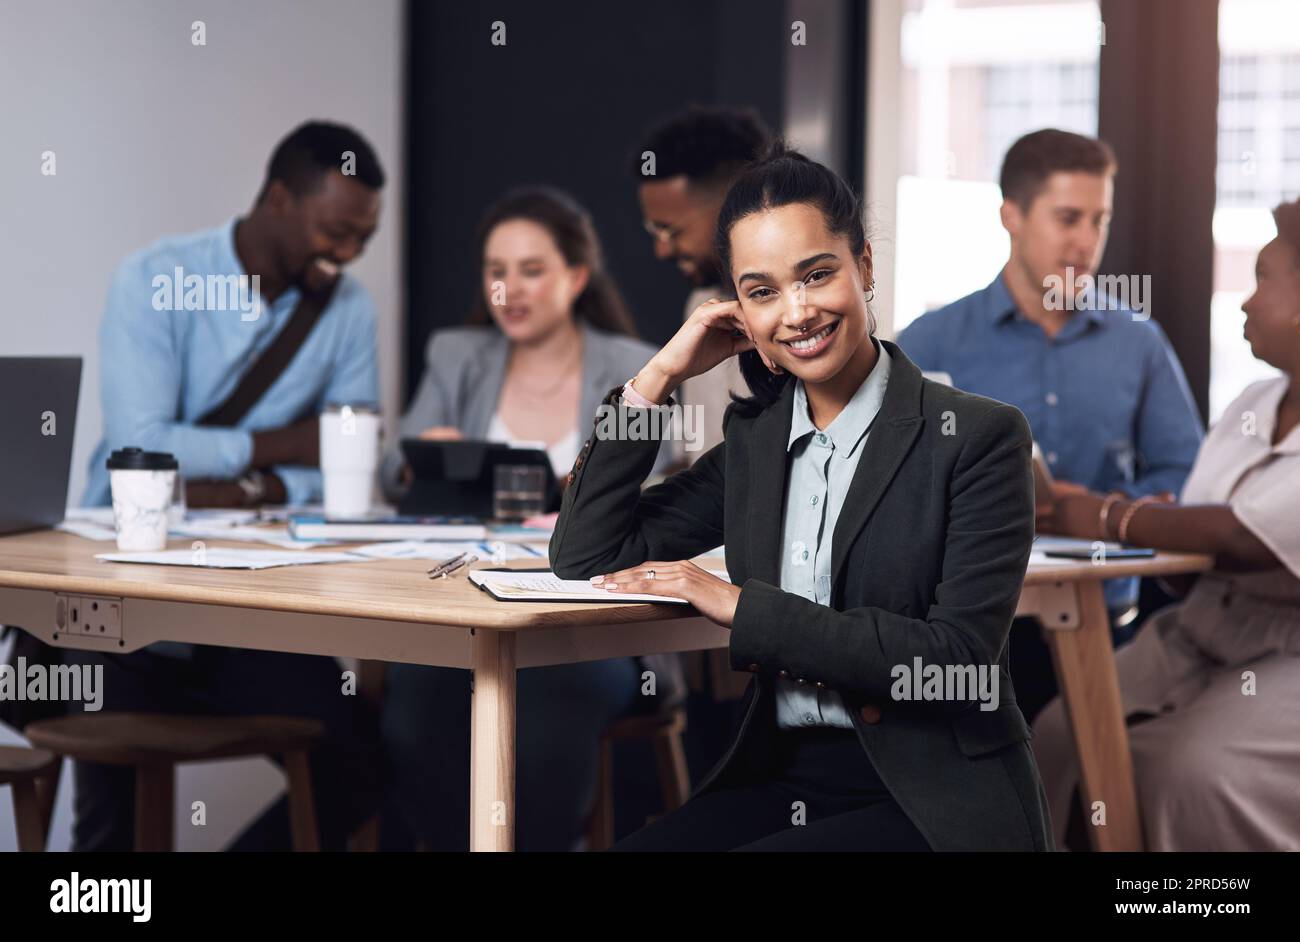 Se sentir confiant dans sa carrière. Portrait d'une jeune femme d'affaires assise dans un bureau avec ses collègues en arrière-plan. Banque D'Images